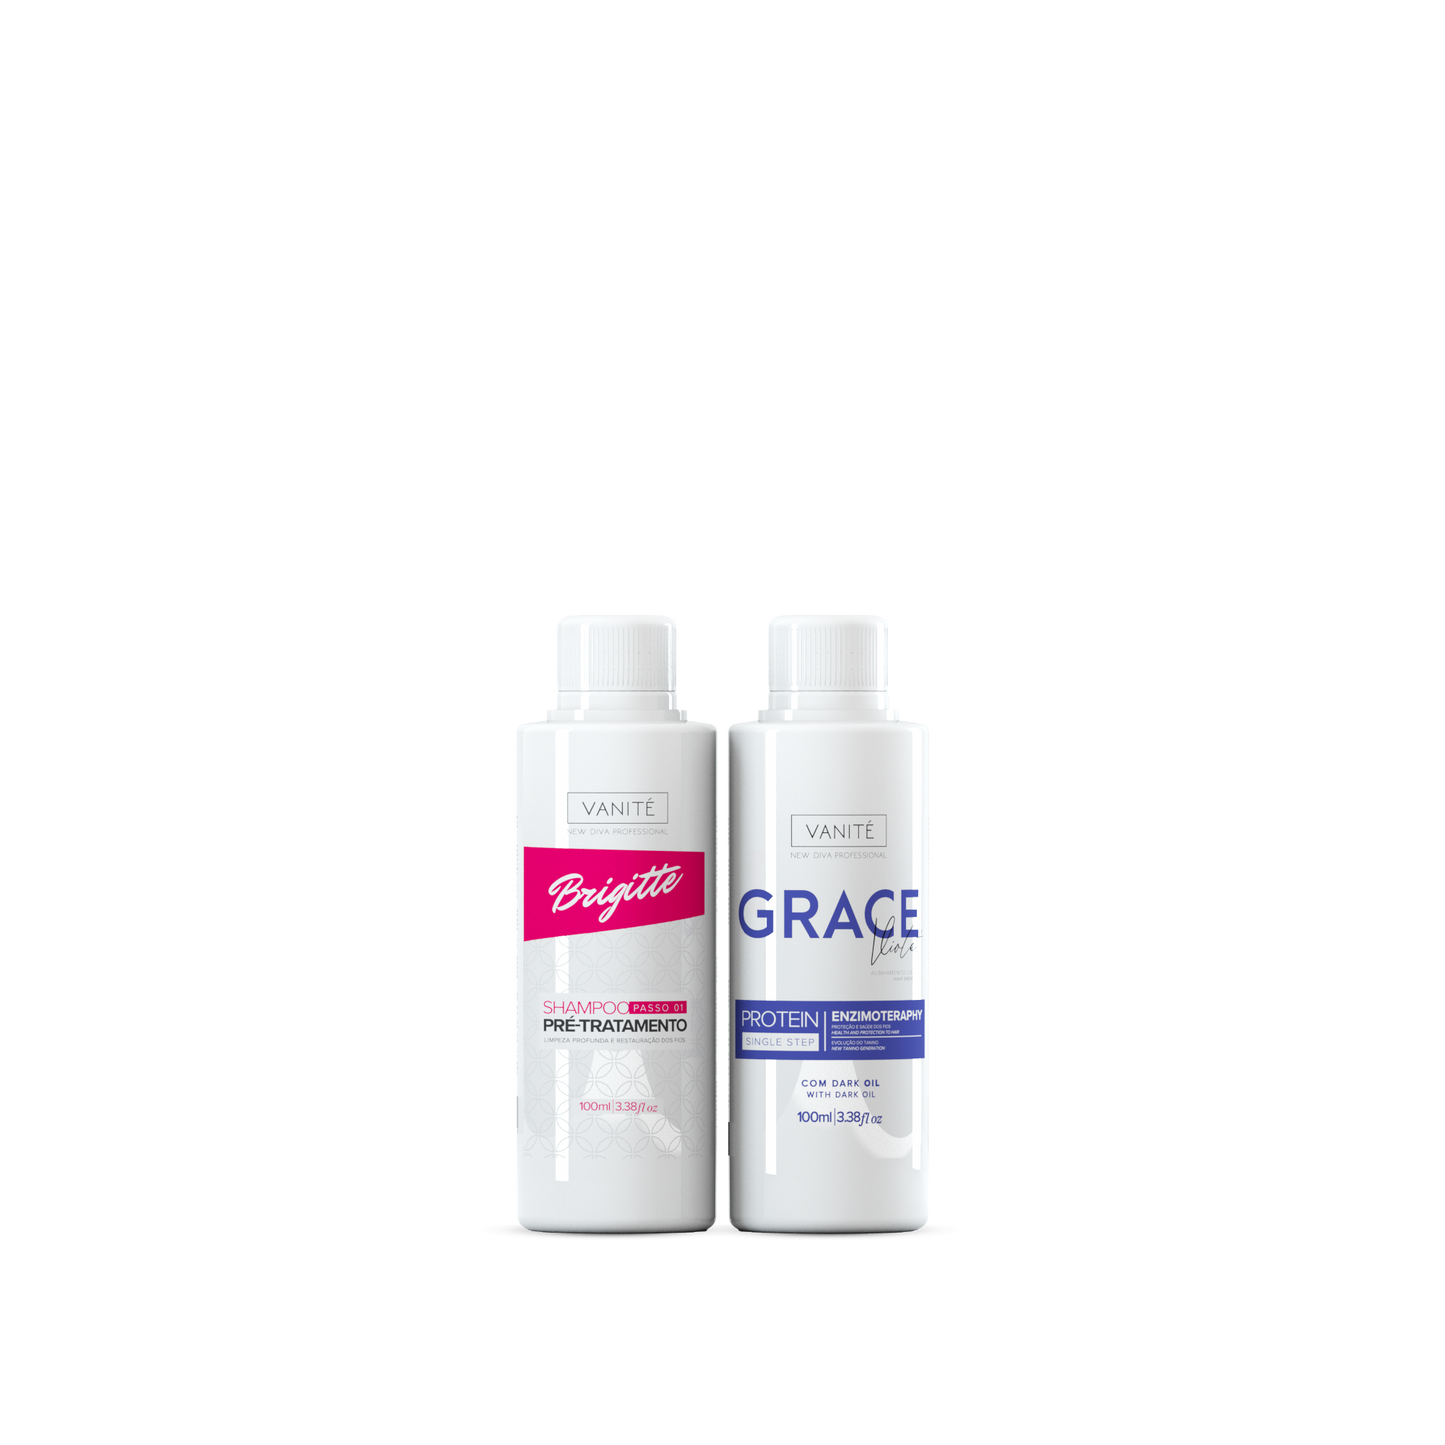 Kit - 1  unit Grace Enzimoteraphy Violet + 1 unit Brigitte Pre-Treatment Shampoo | 100ml